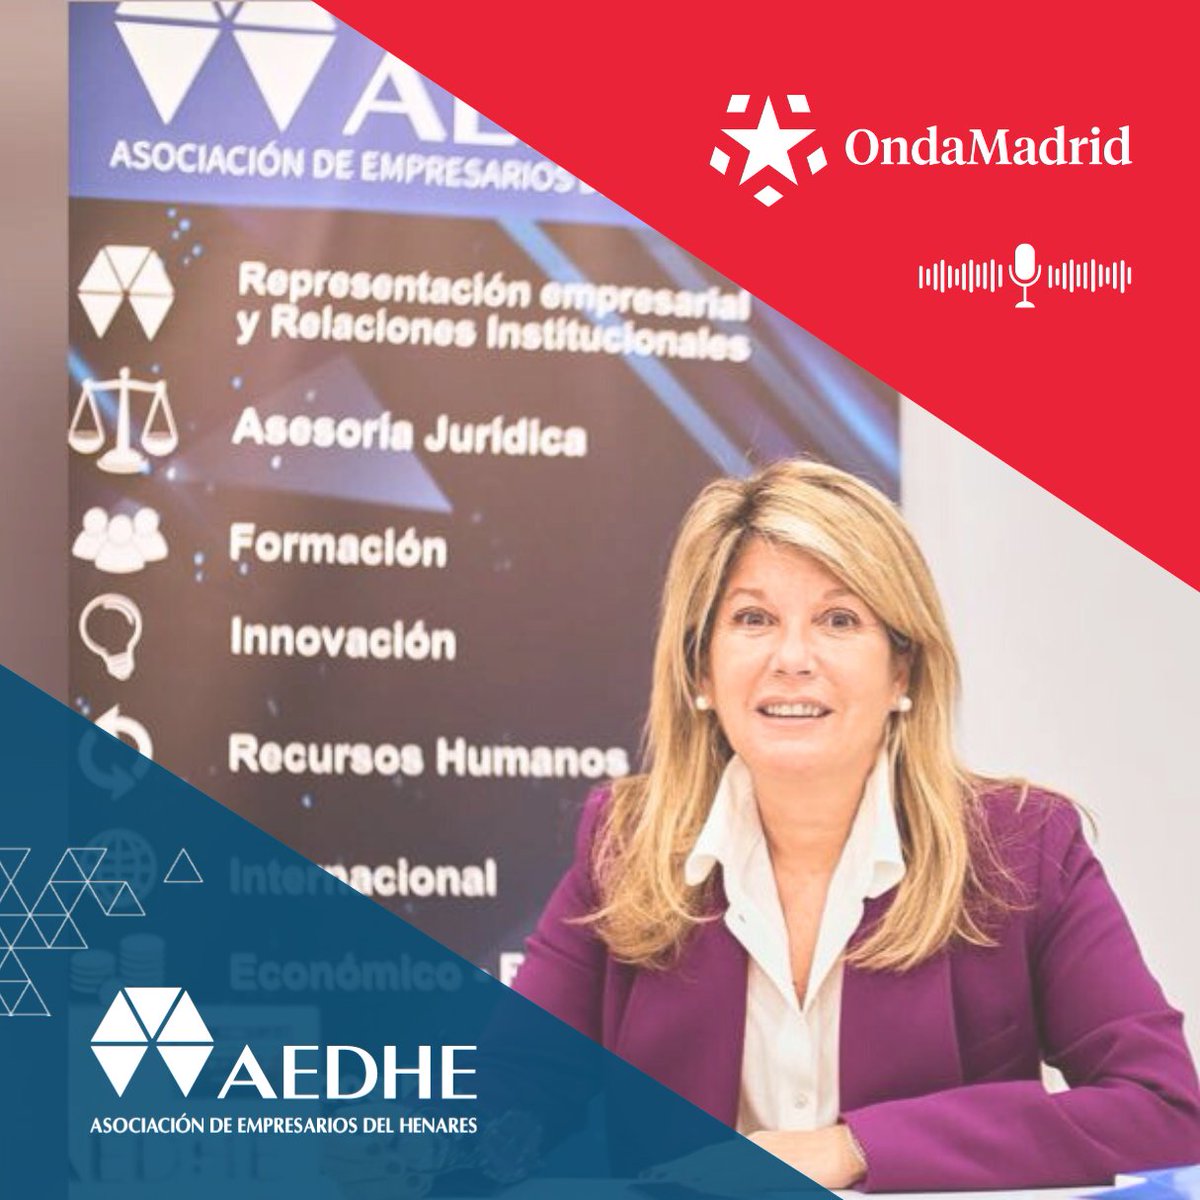 Entrevista de ONDA MADRID en el programa Madrid Trabaja a Laly Escudero Ossorio, Presidenta de #AEDHE, sobre la Feria de las Profesiones que tendrá lugar mañana 11 de abril en Torrejón de Ardoz. Link a la entrevista: youtu.be/l5ot4XsK5FY